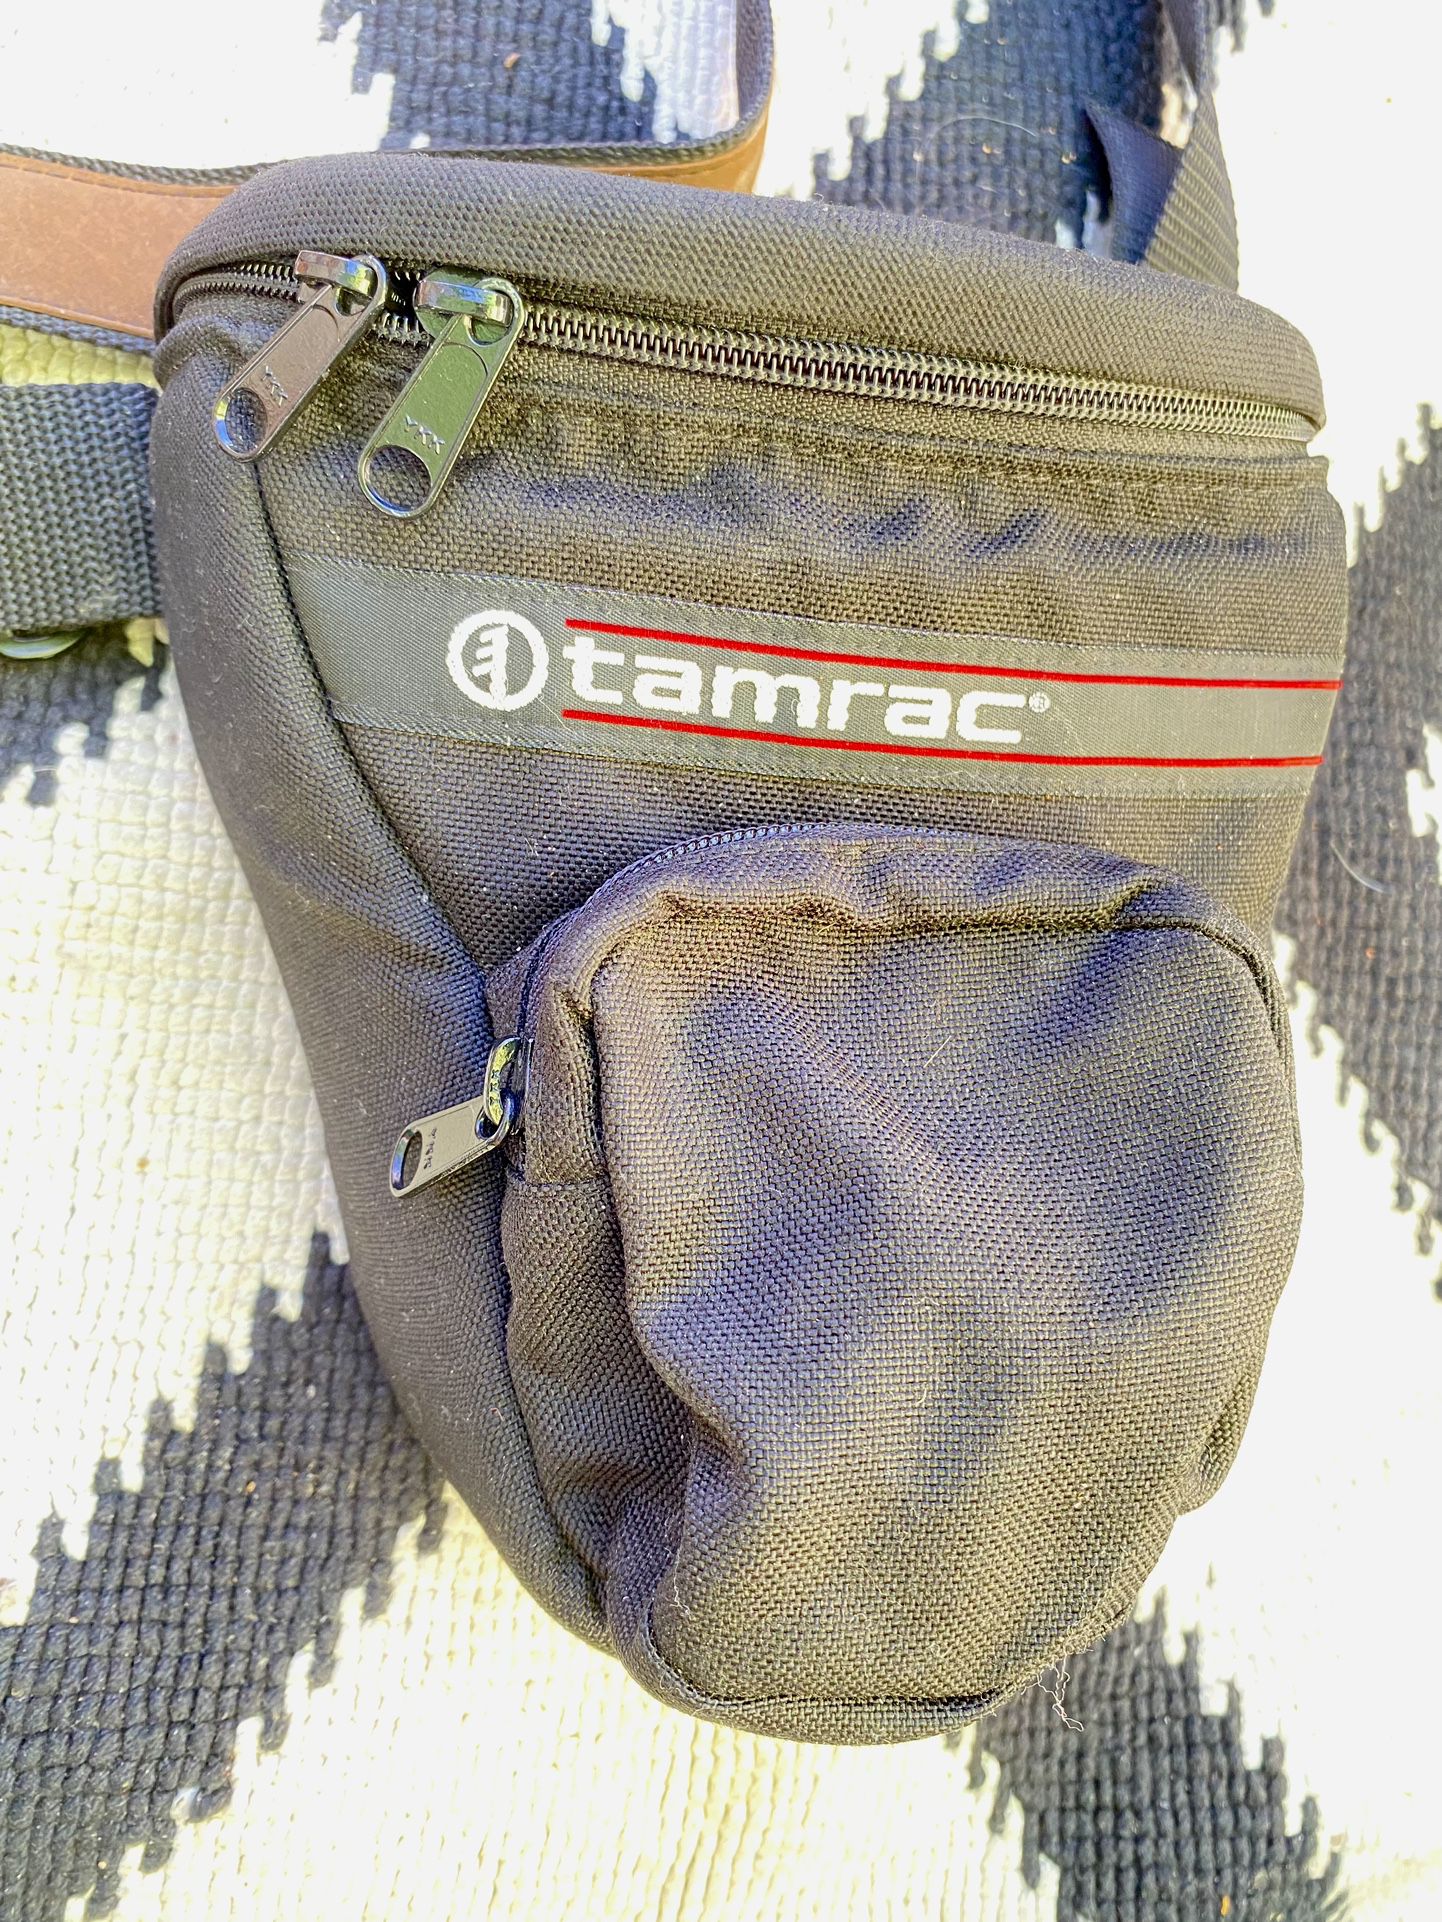 Camera Bag Tamrac 